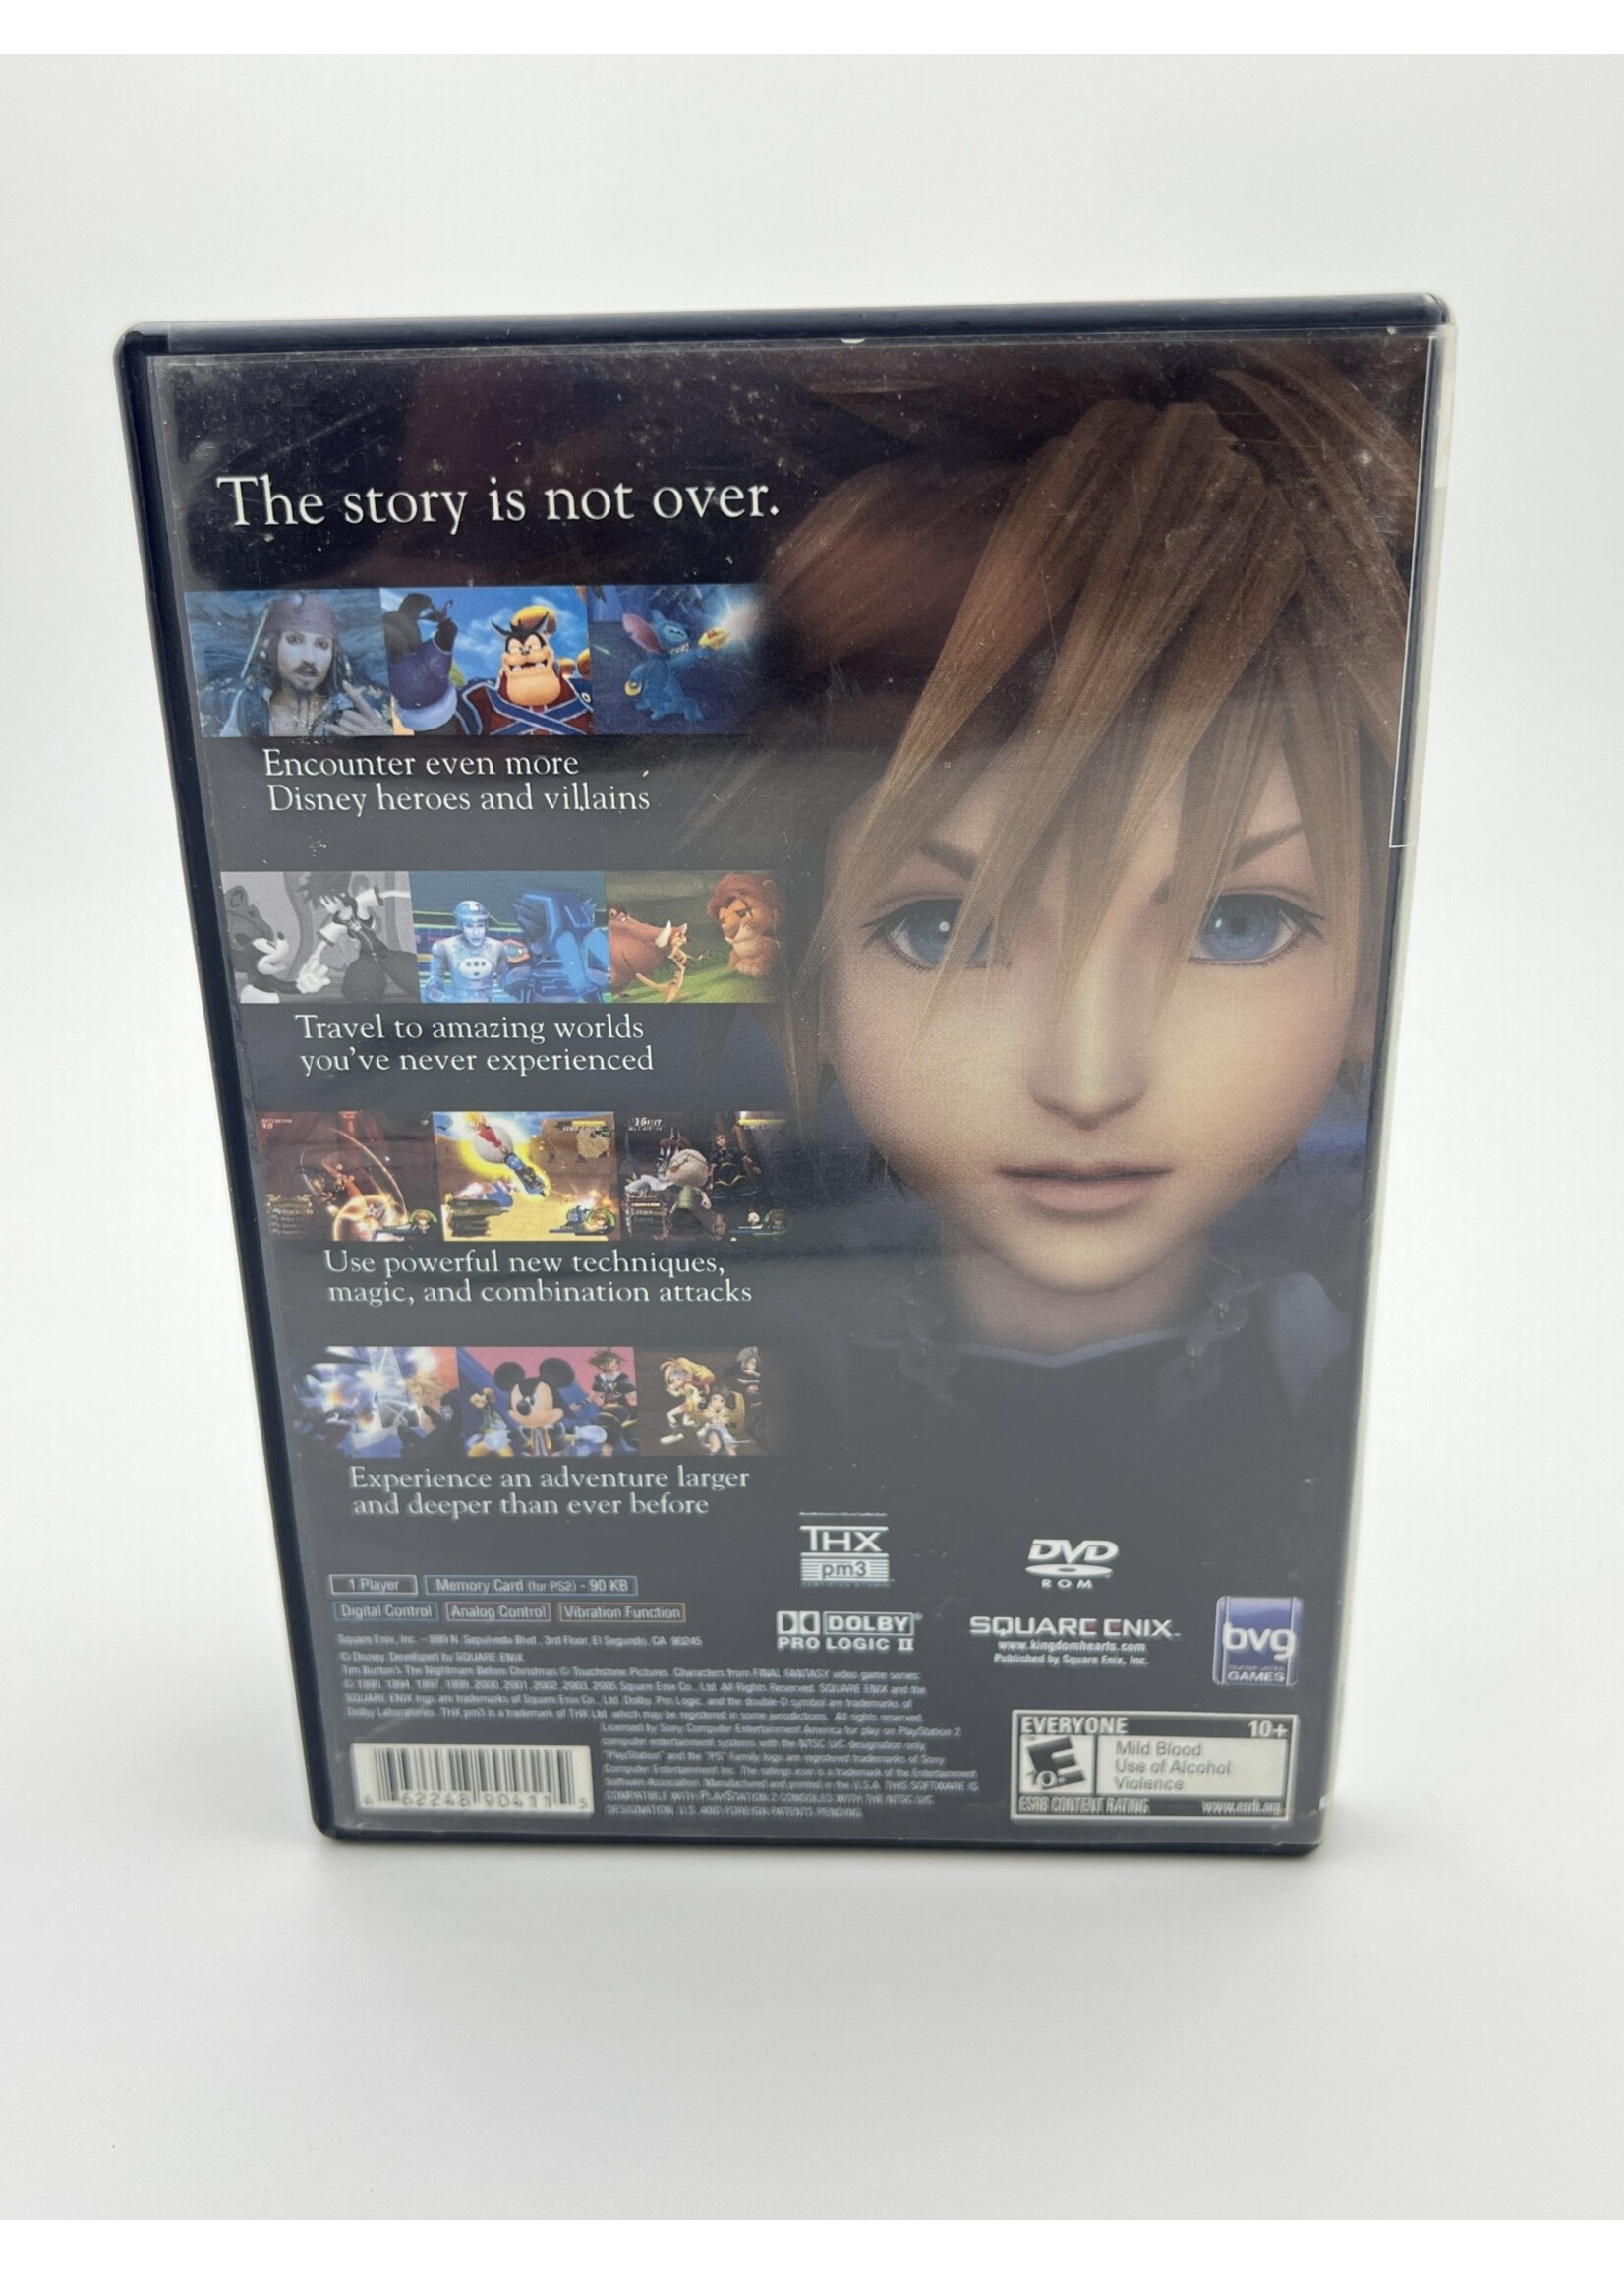 Sony Disney Kingdom Hearts 2 Ps2